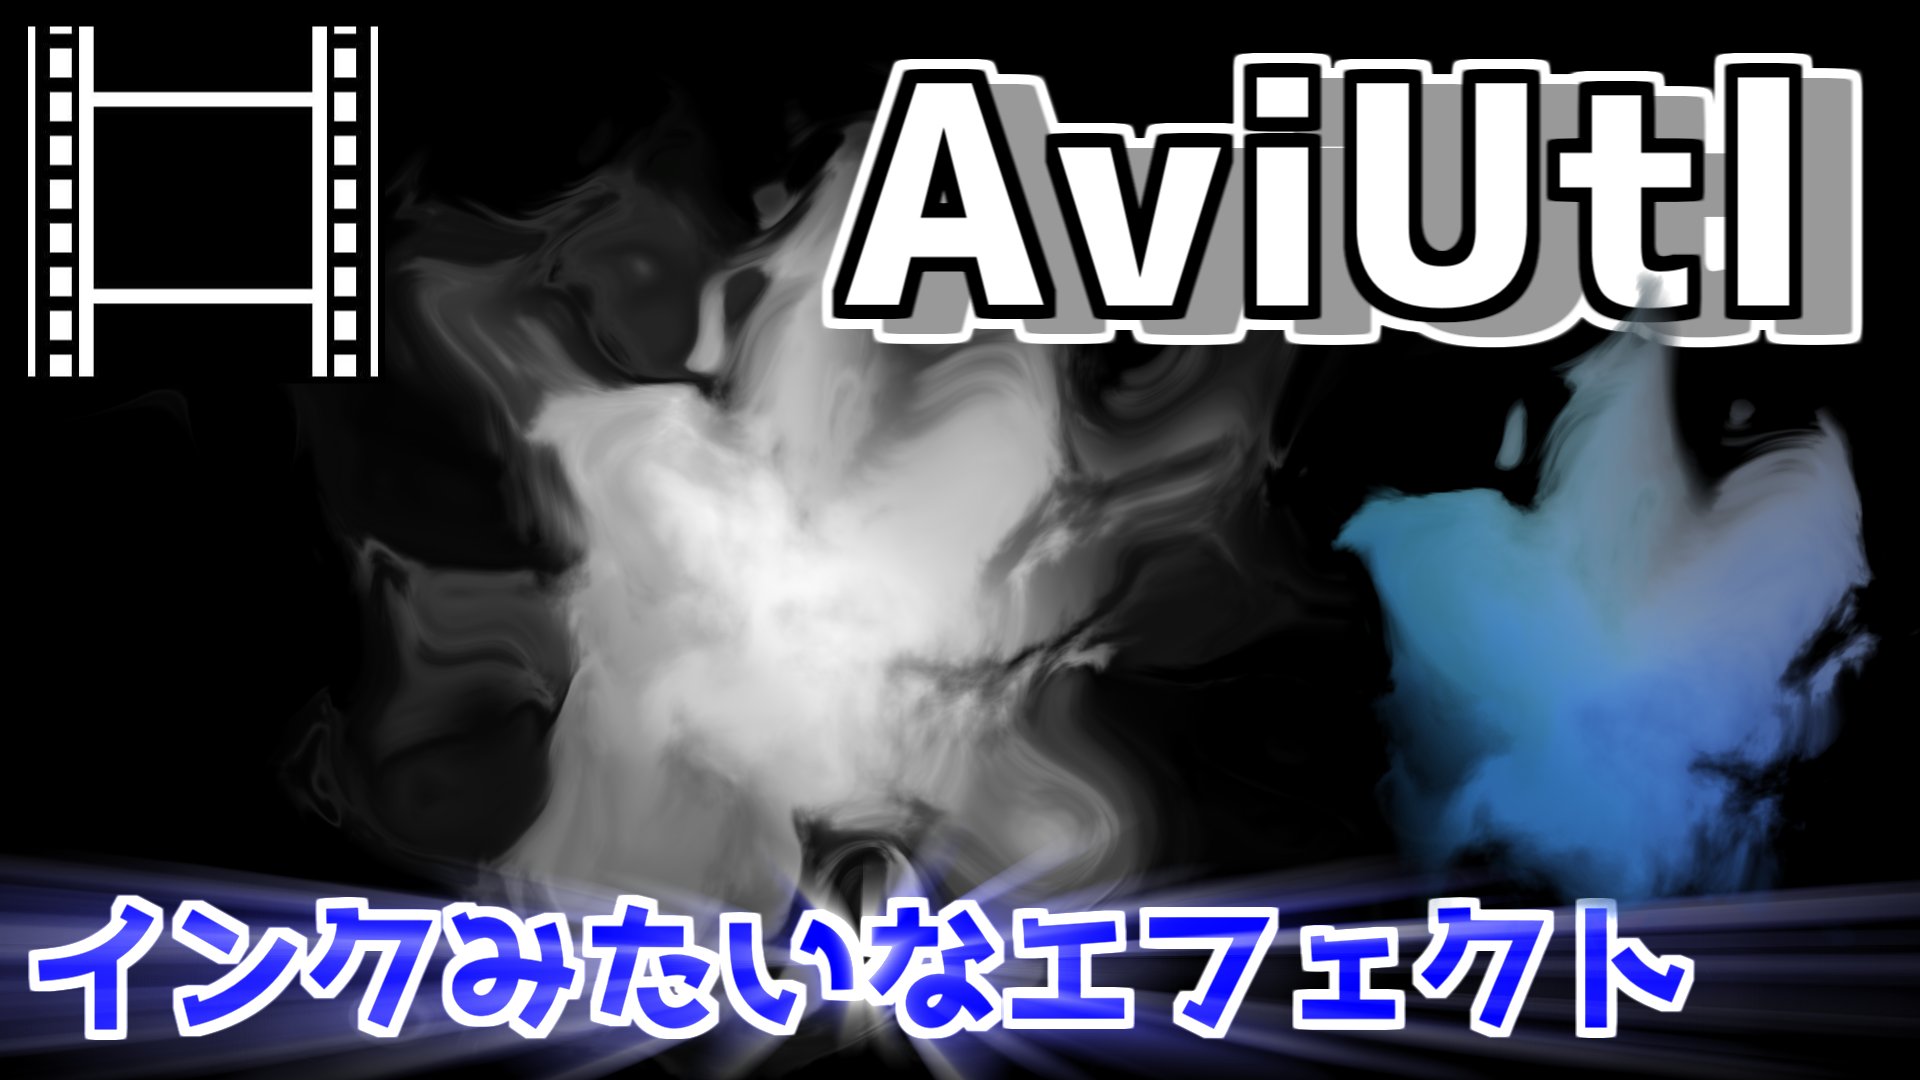 Kaki やっと動画完成しましたー Aviutlでつくれるインクが溶けるようなエフェクトを解説します Aviutl T Co 44wubhebe5